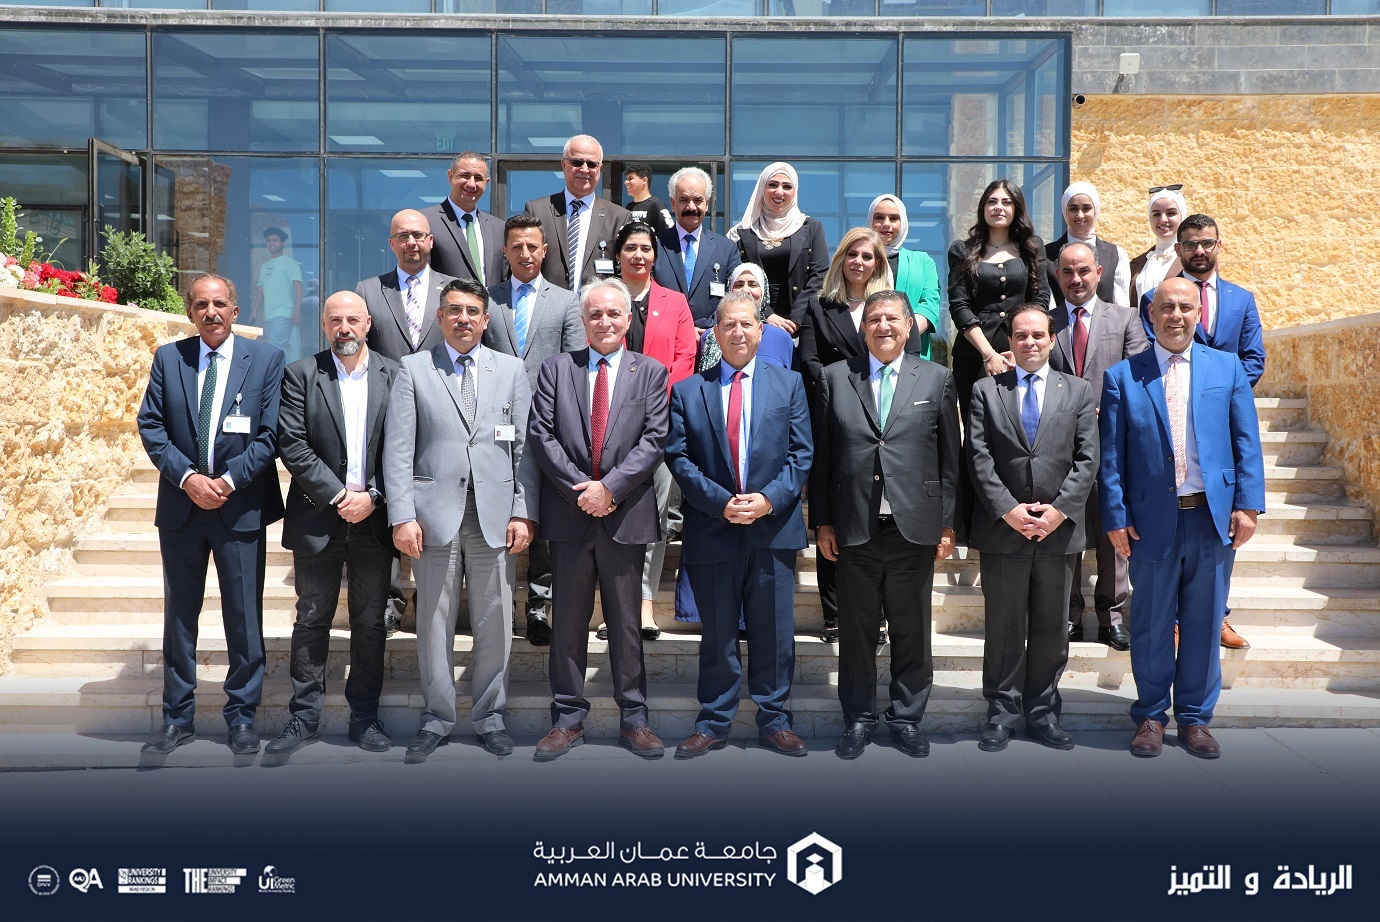 افتتاح محطة طلال أبو غزاله للمعرفة في جامعة عمان العربية وتوقيع اتفاقيات ثنائية